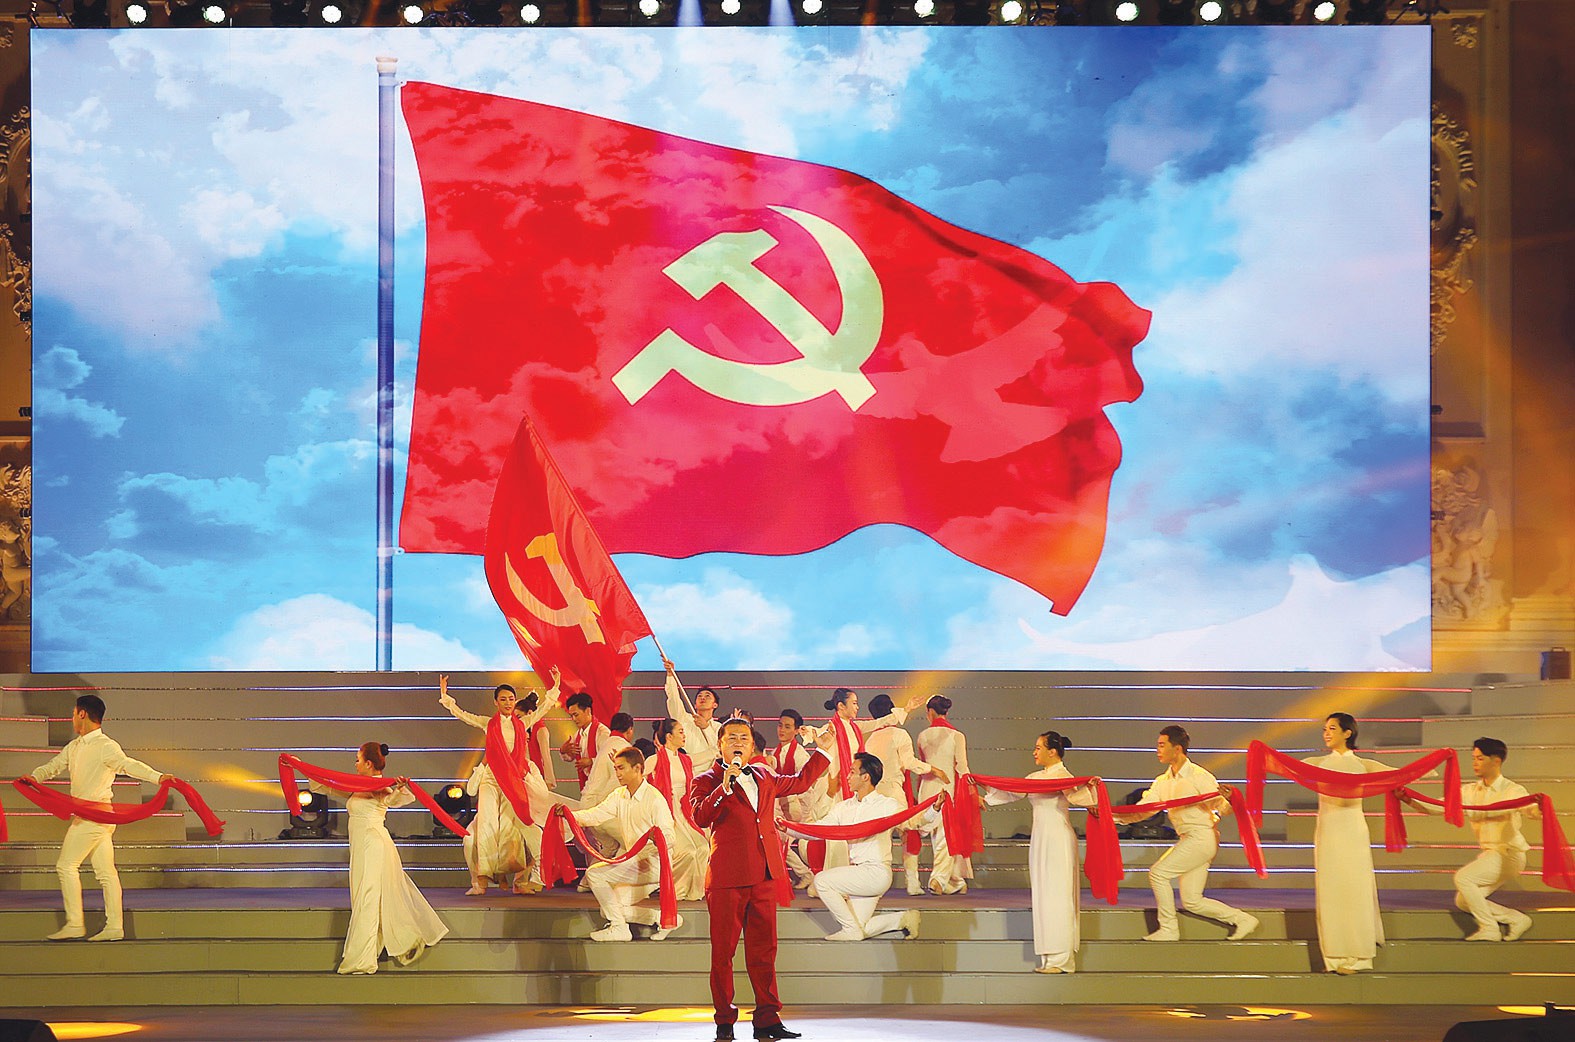 Đảng Cộng sản Việt Nam:
Đảng cộng sản Việt Nam đã đưa đất nước ta đi lên trên con đường phát triển giàu có, độc lập và tự do. Năm 2024 đánh dấu 103 năm thành lập và phát triển của đảng. Hãy tham gia xem các hình ảnh đặc biệt này để hiểu về lịch sử cũng như sự đóng góp của đảng cộng sản Việt Nam cho đất nước.